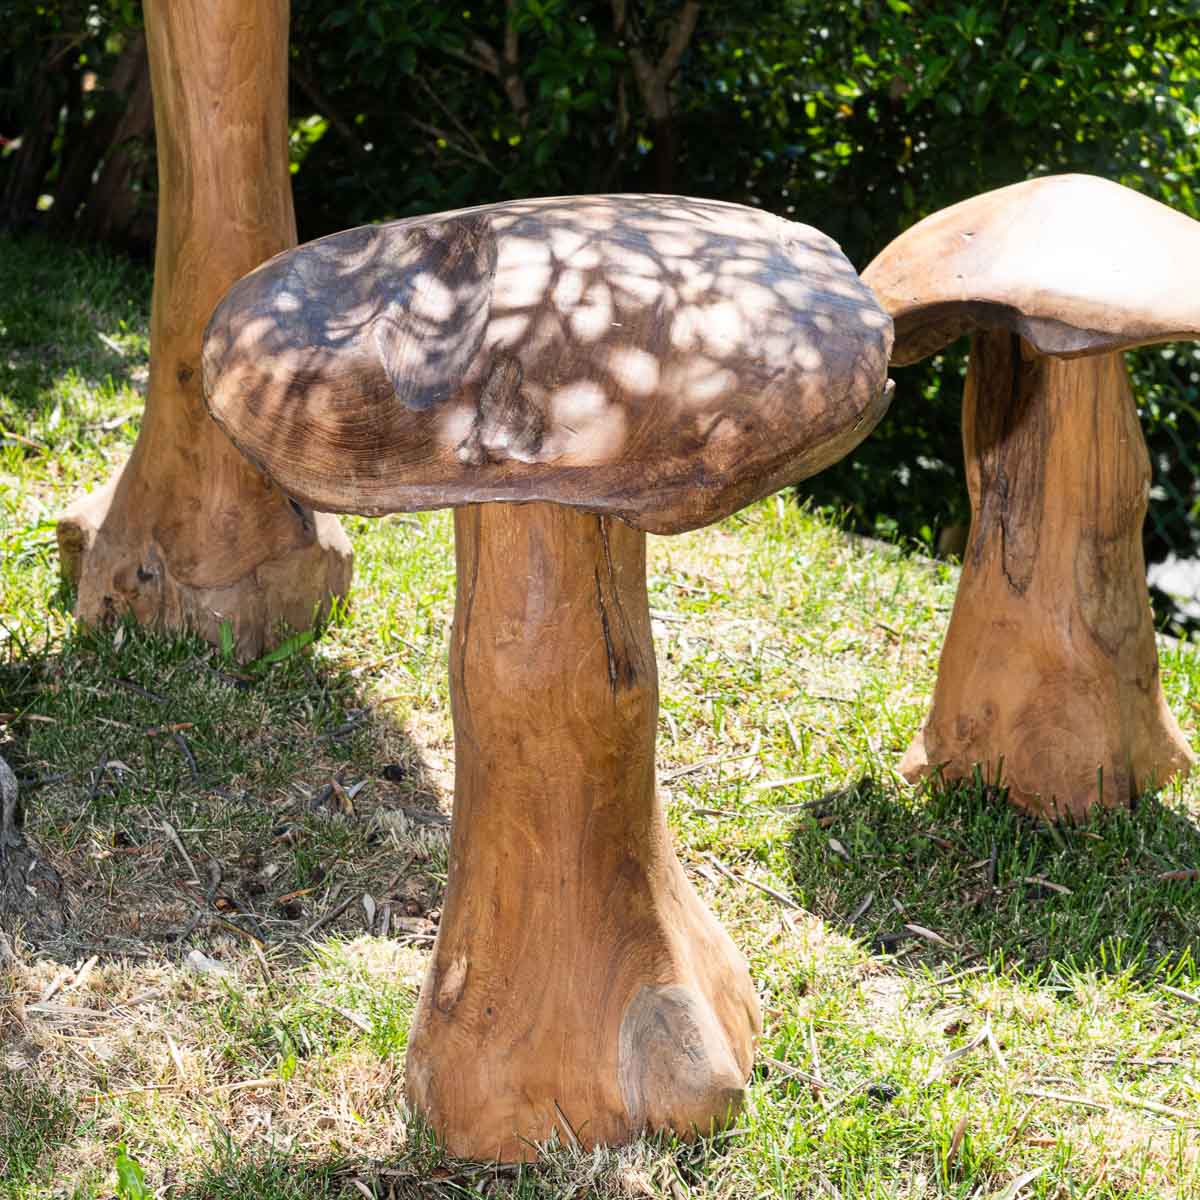 Creative en bois massif de champignons décoration de bureau